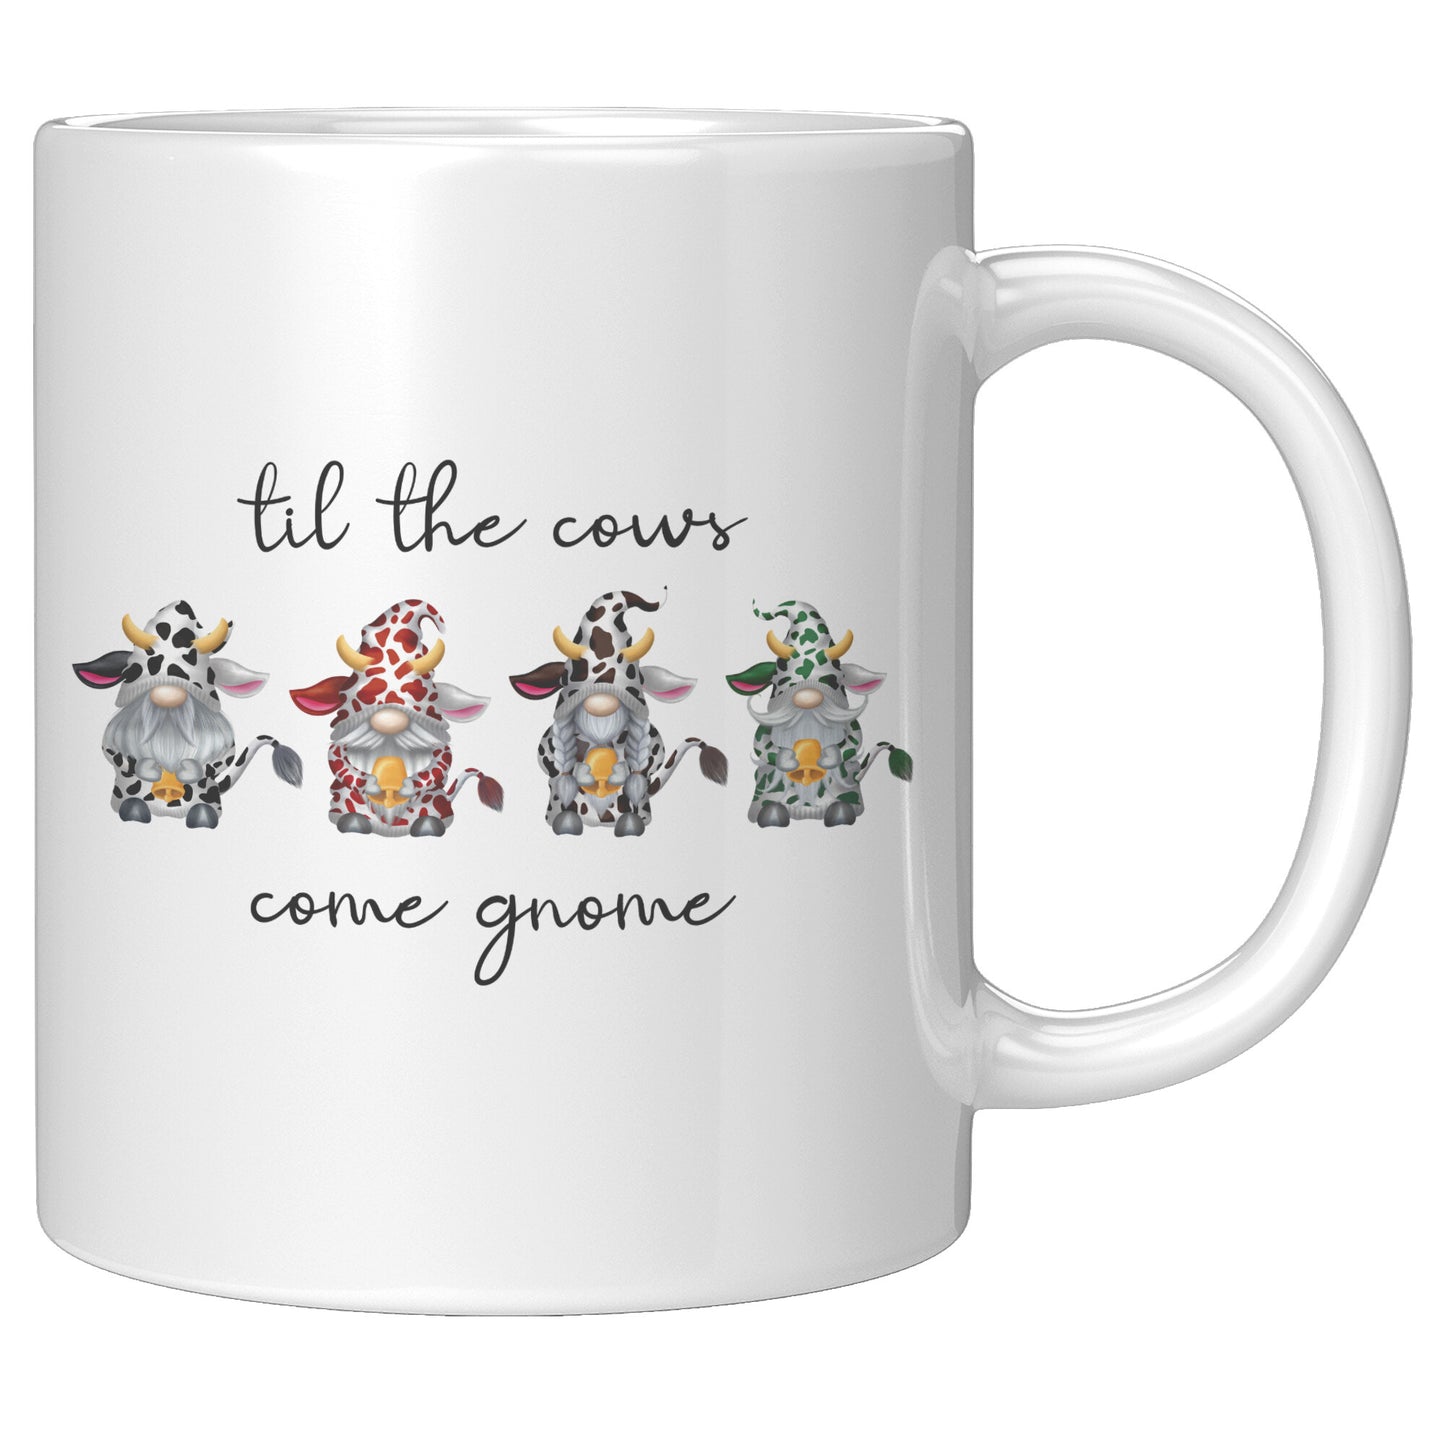 Til The Cows Come Gnome Mug